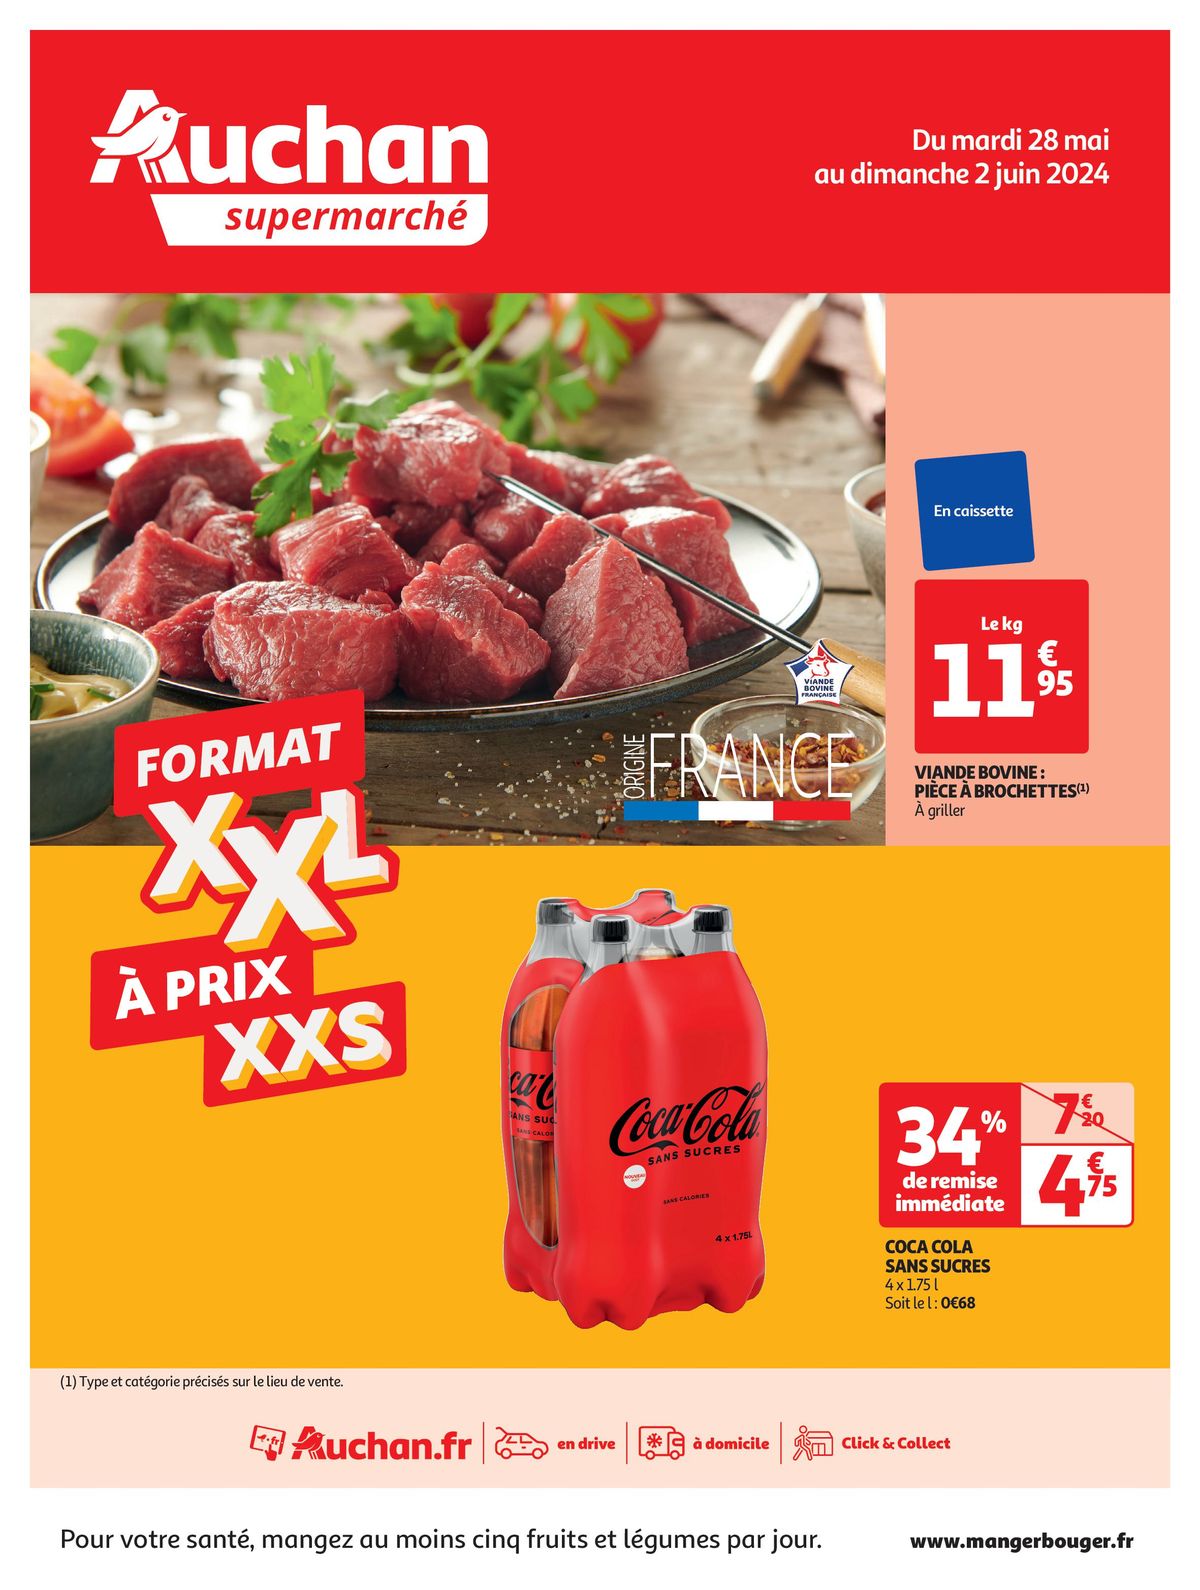 Catalogue Format XXL à prix XXS dans votre supermarché, page 00001